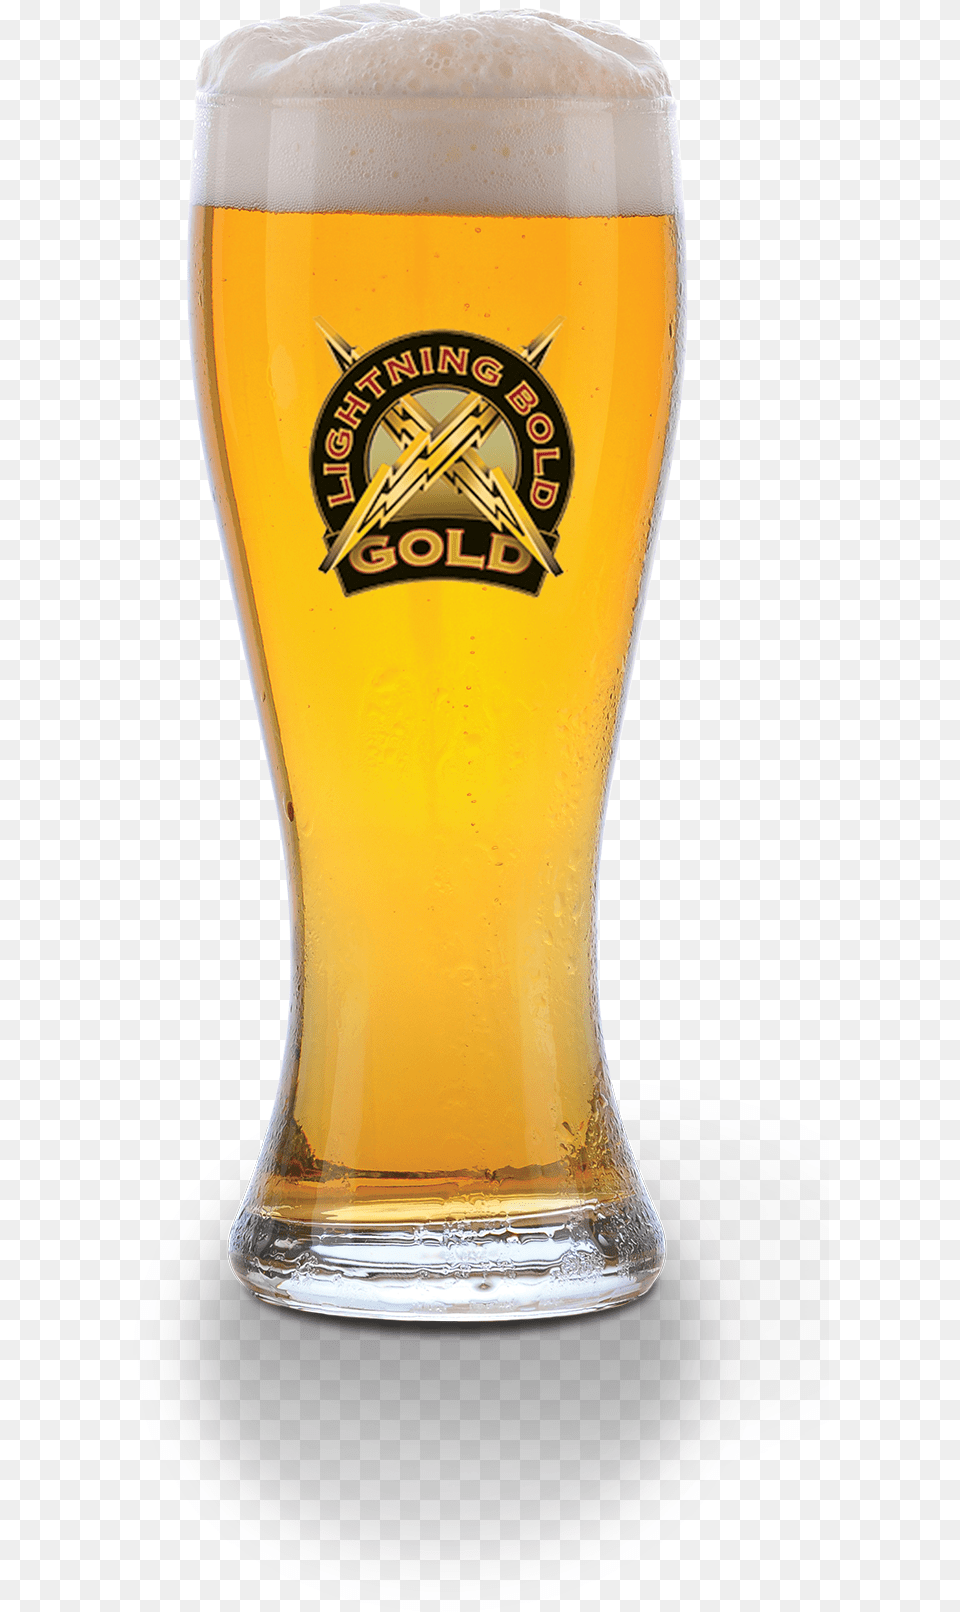 Lightning Beer Hops Beer Glass, Alcohol, Beer Glass, Beverage, Liquor Png Image